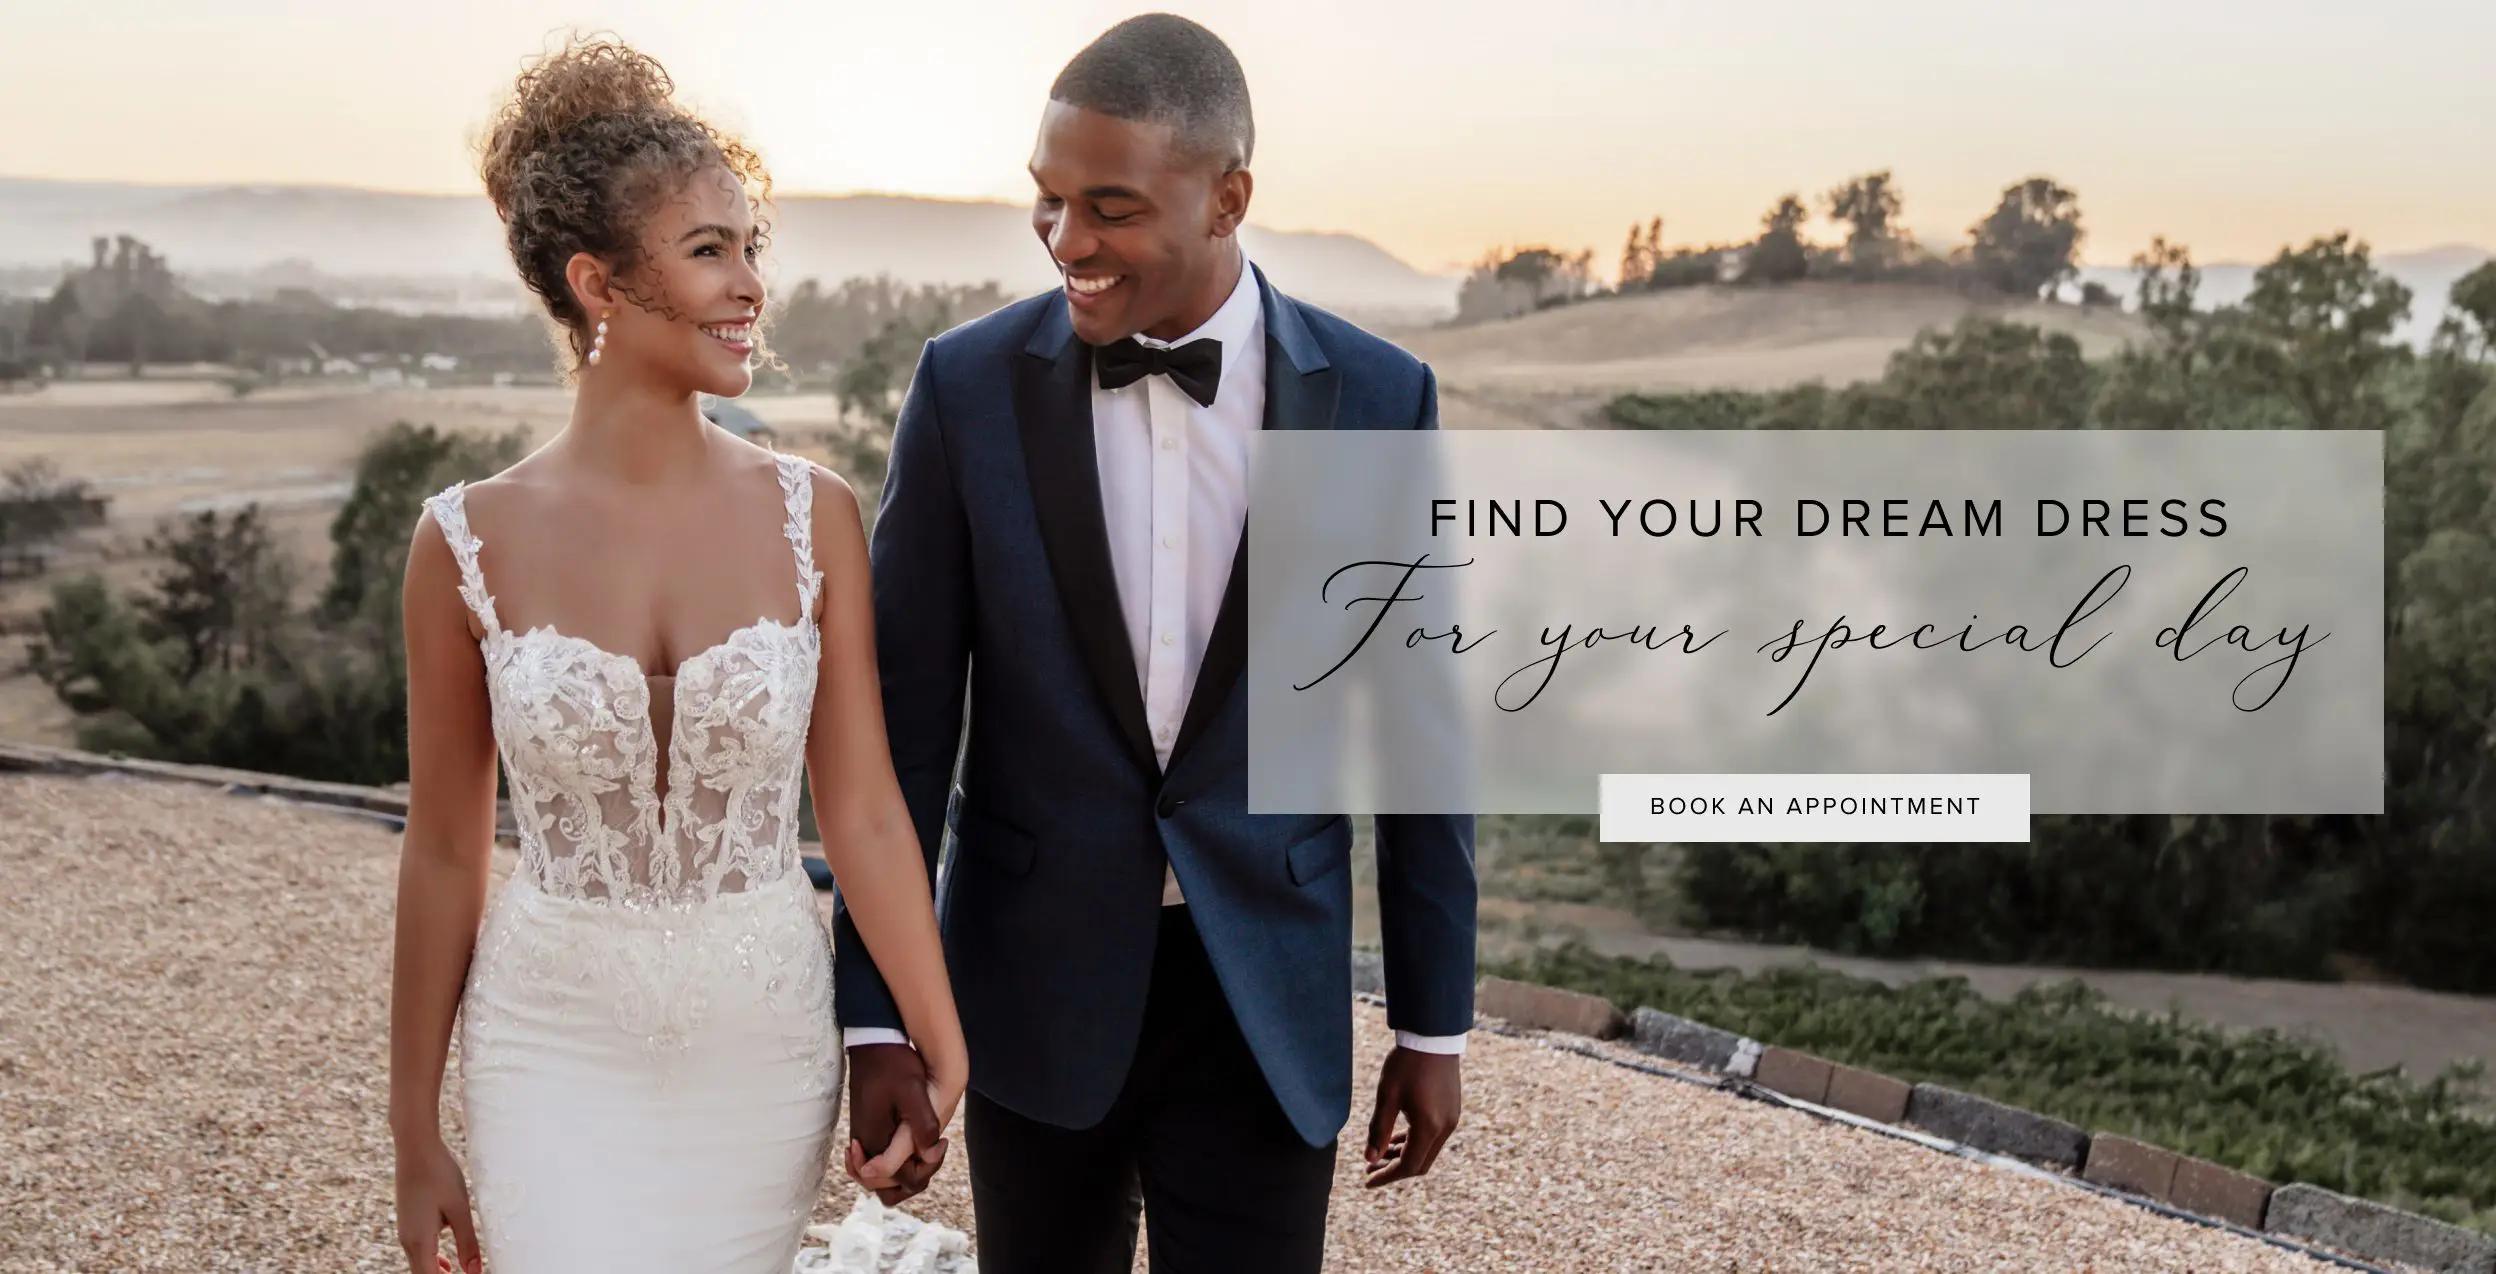 "Find your dream dress" banner for desktop